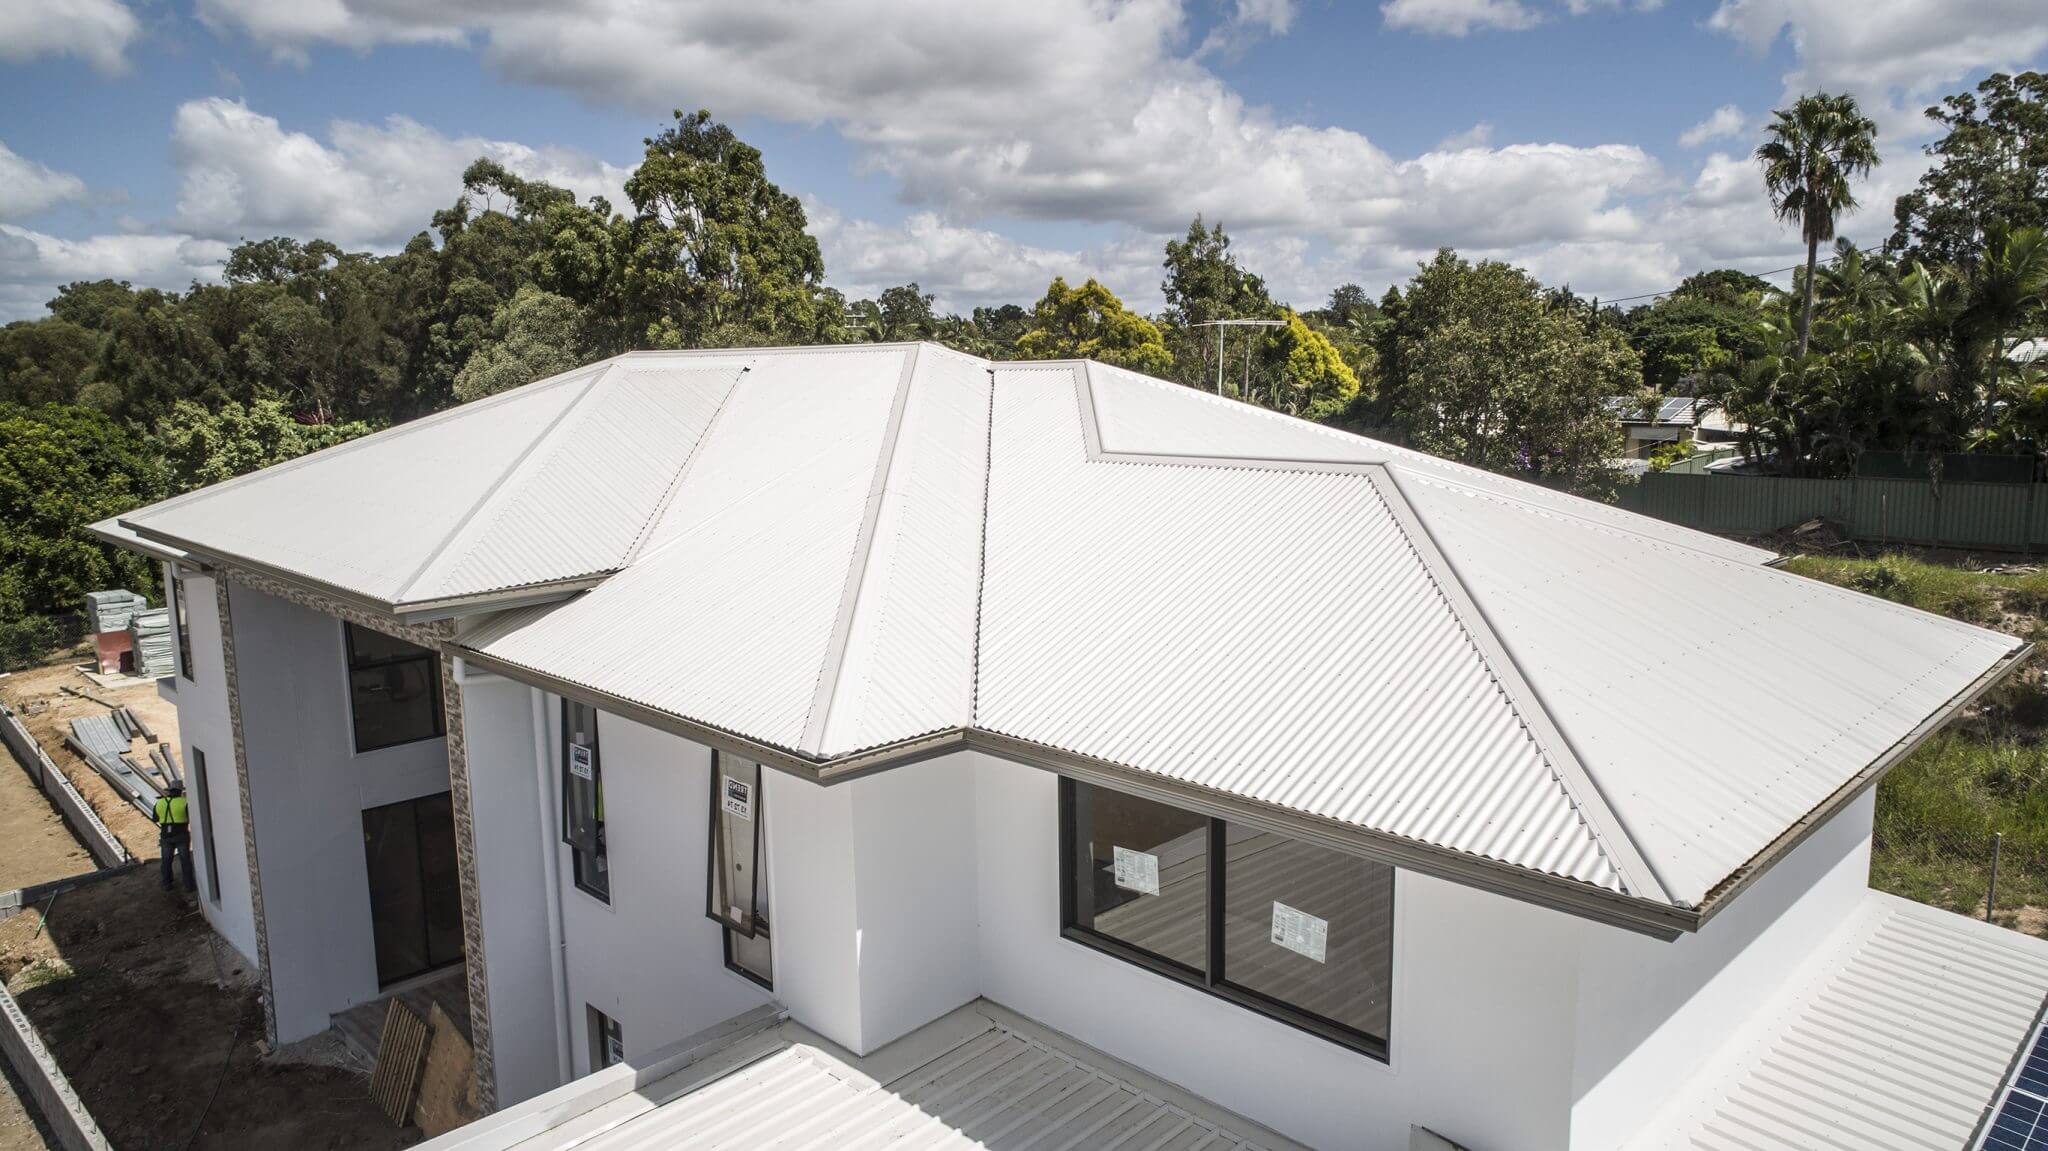 Colorbond Metal Roofing In Queensland